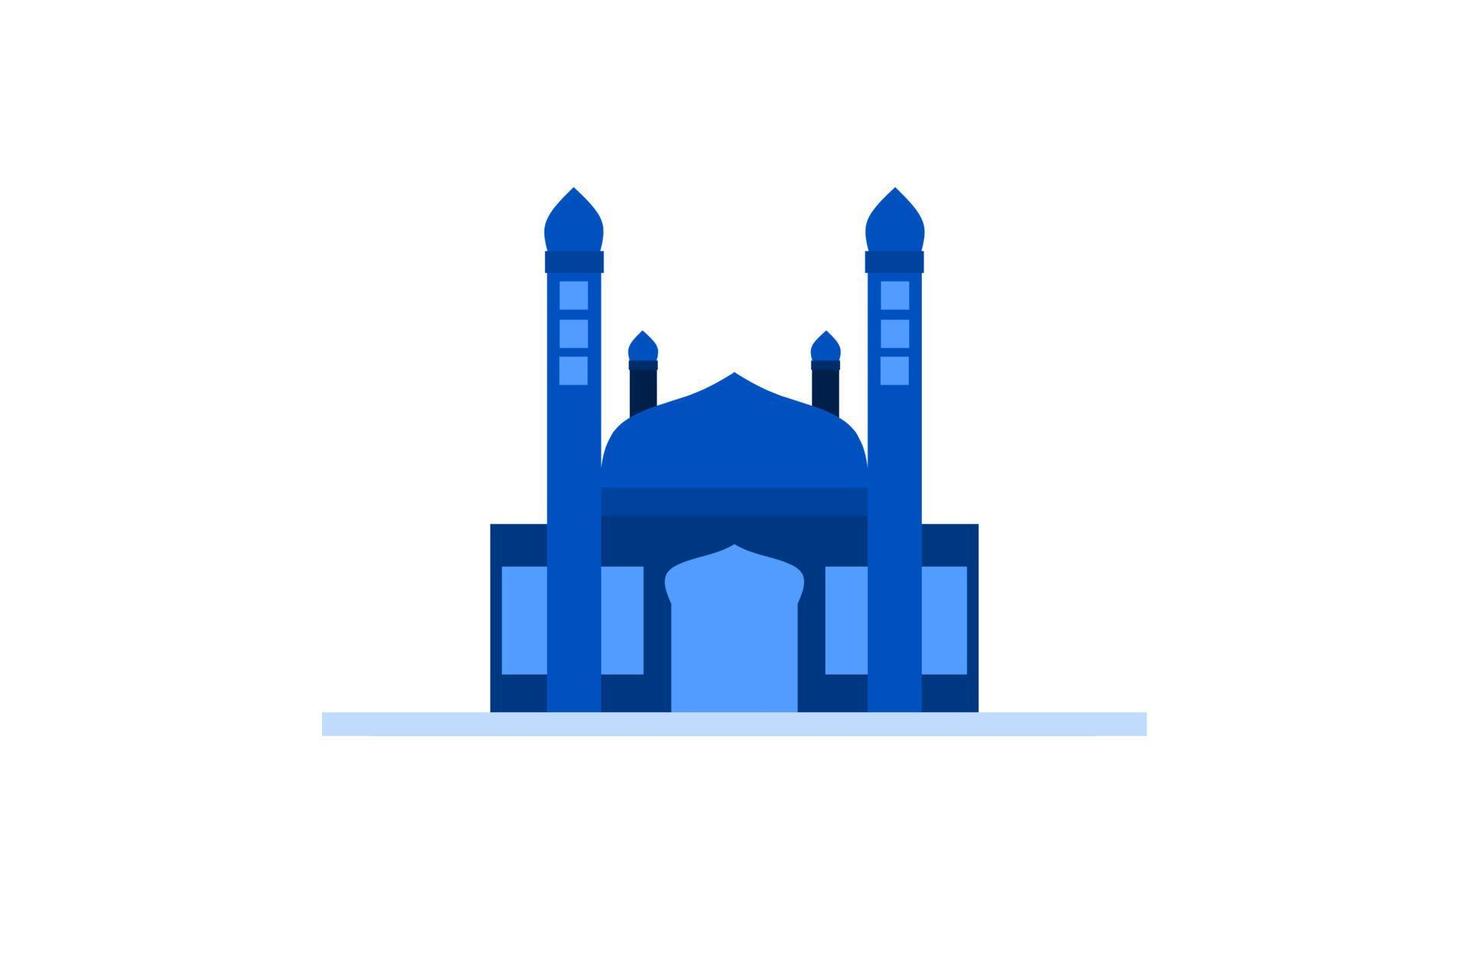 moské illustration, moské ikon med elegant begrepp, perfekt för ramadan design vektor